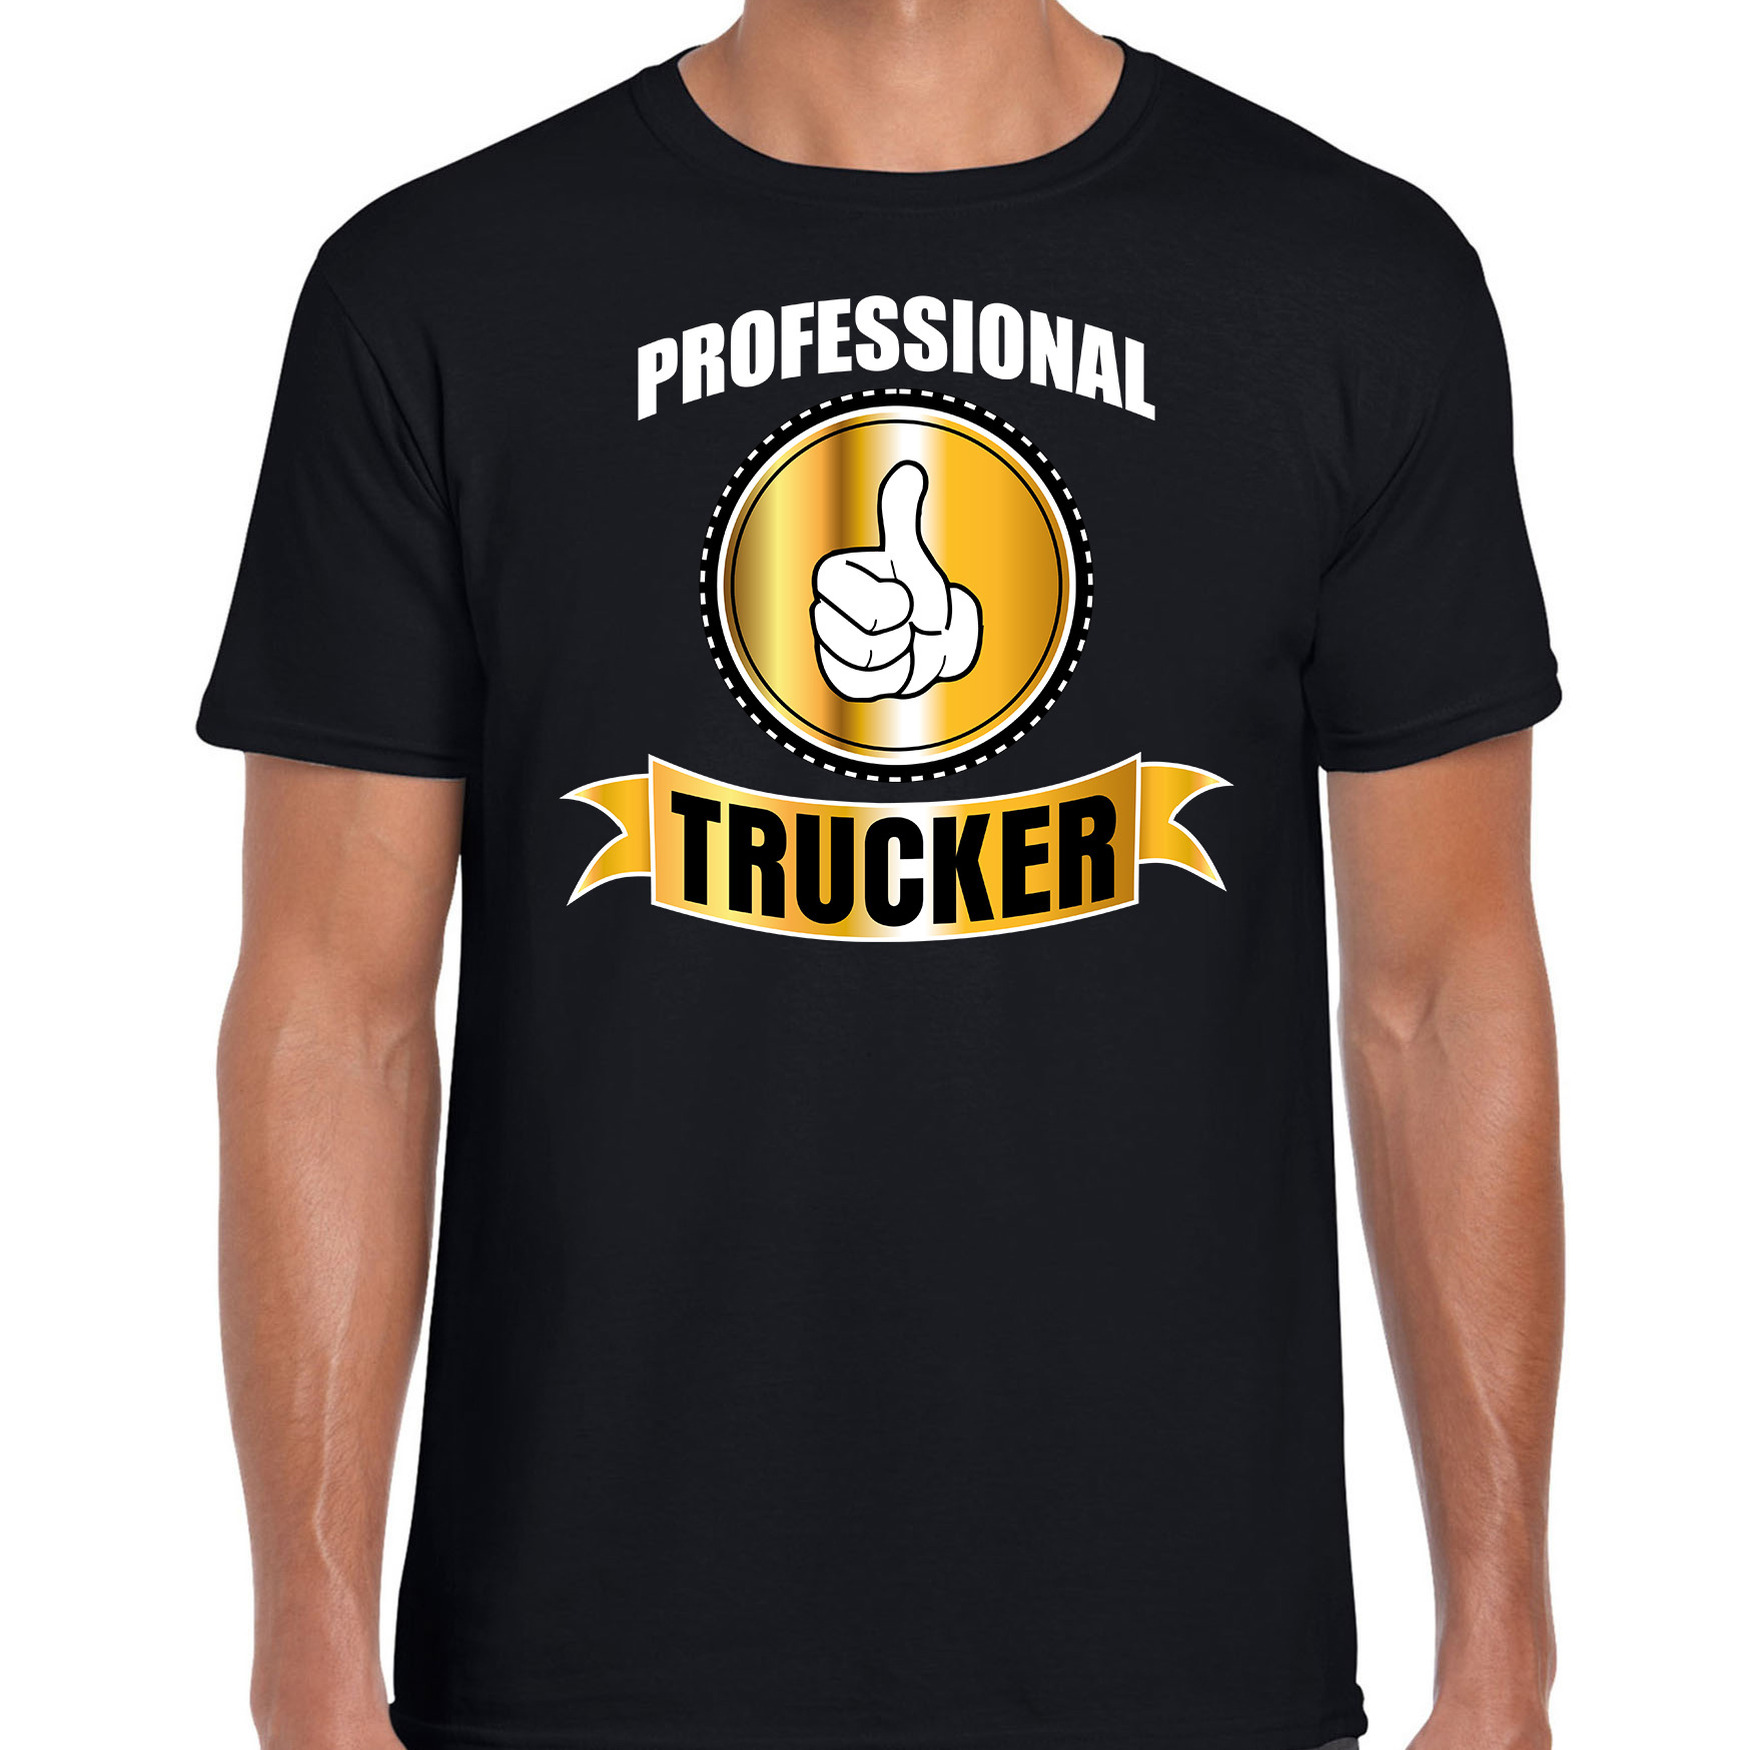 Professional trucker-professionele vrachtwagenchauffeur t-shirt zwart heren Vrachtwagenchauffeur